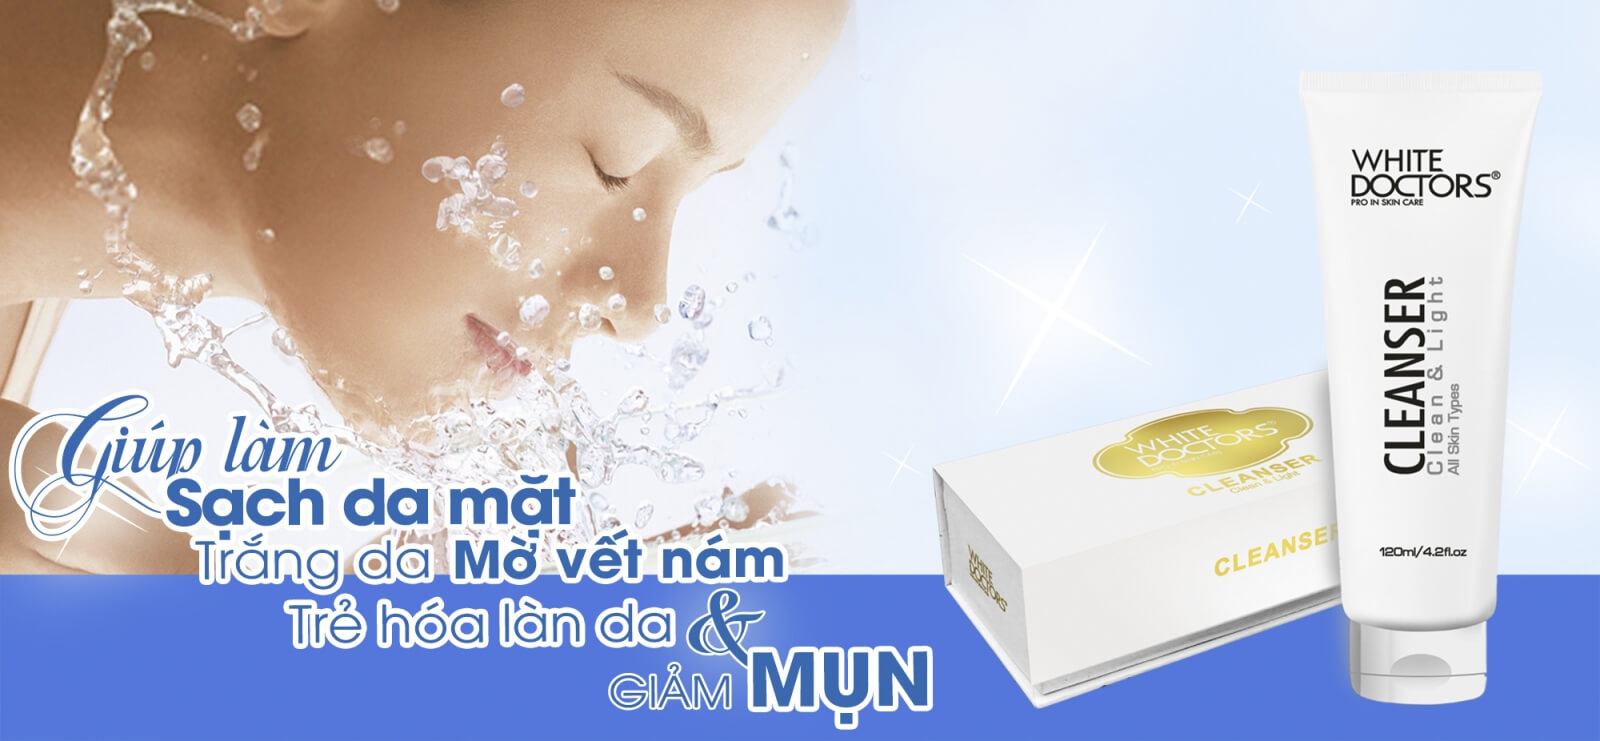 Sữa rửa mặt White Doctors làm sạch sâu giúp làn da dễ dàng hấp thu dưỡng chất từ kem trị nám